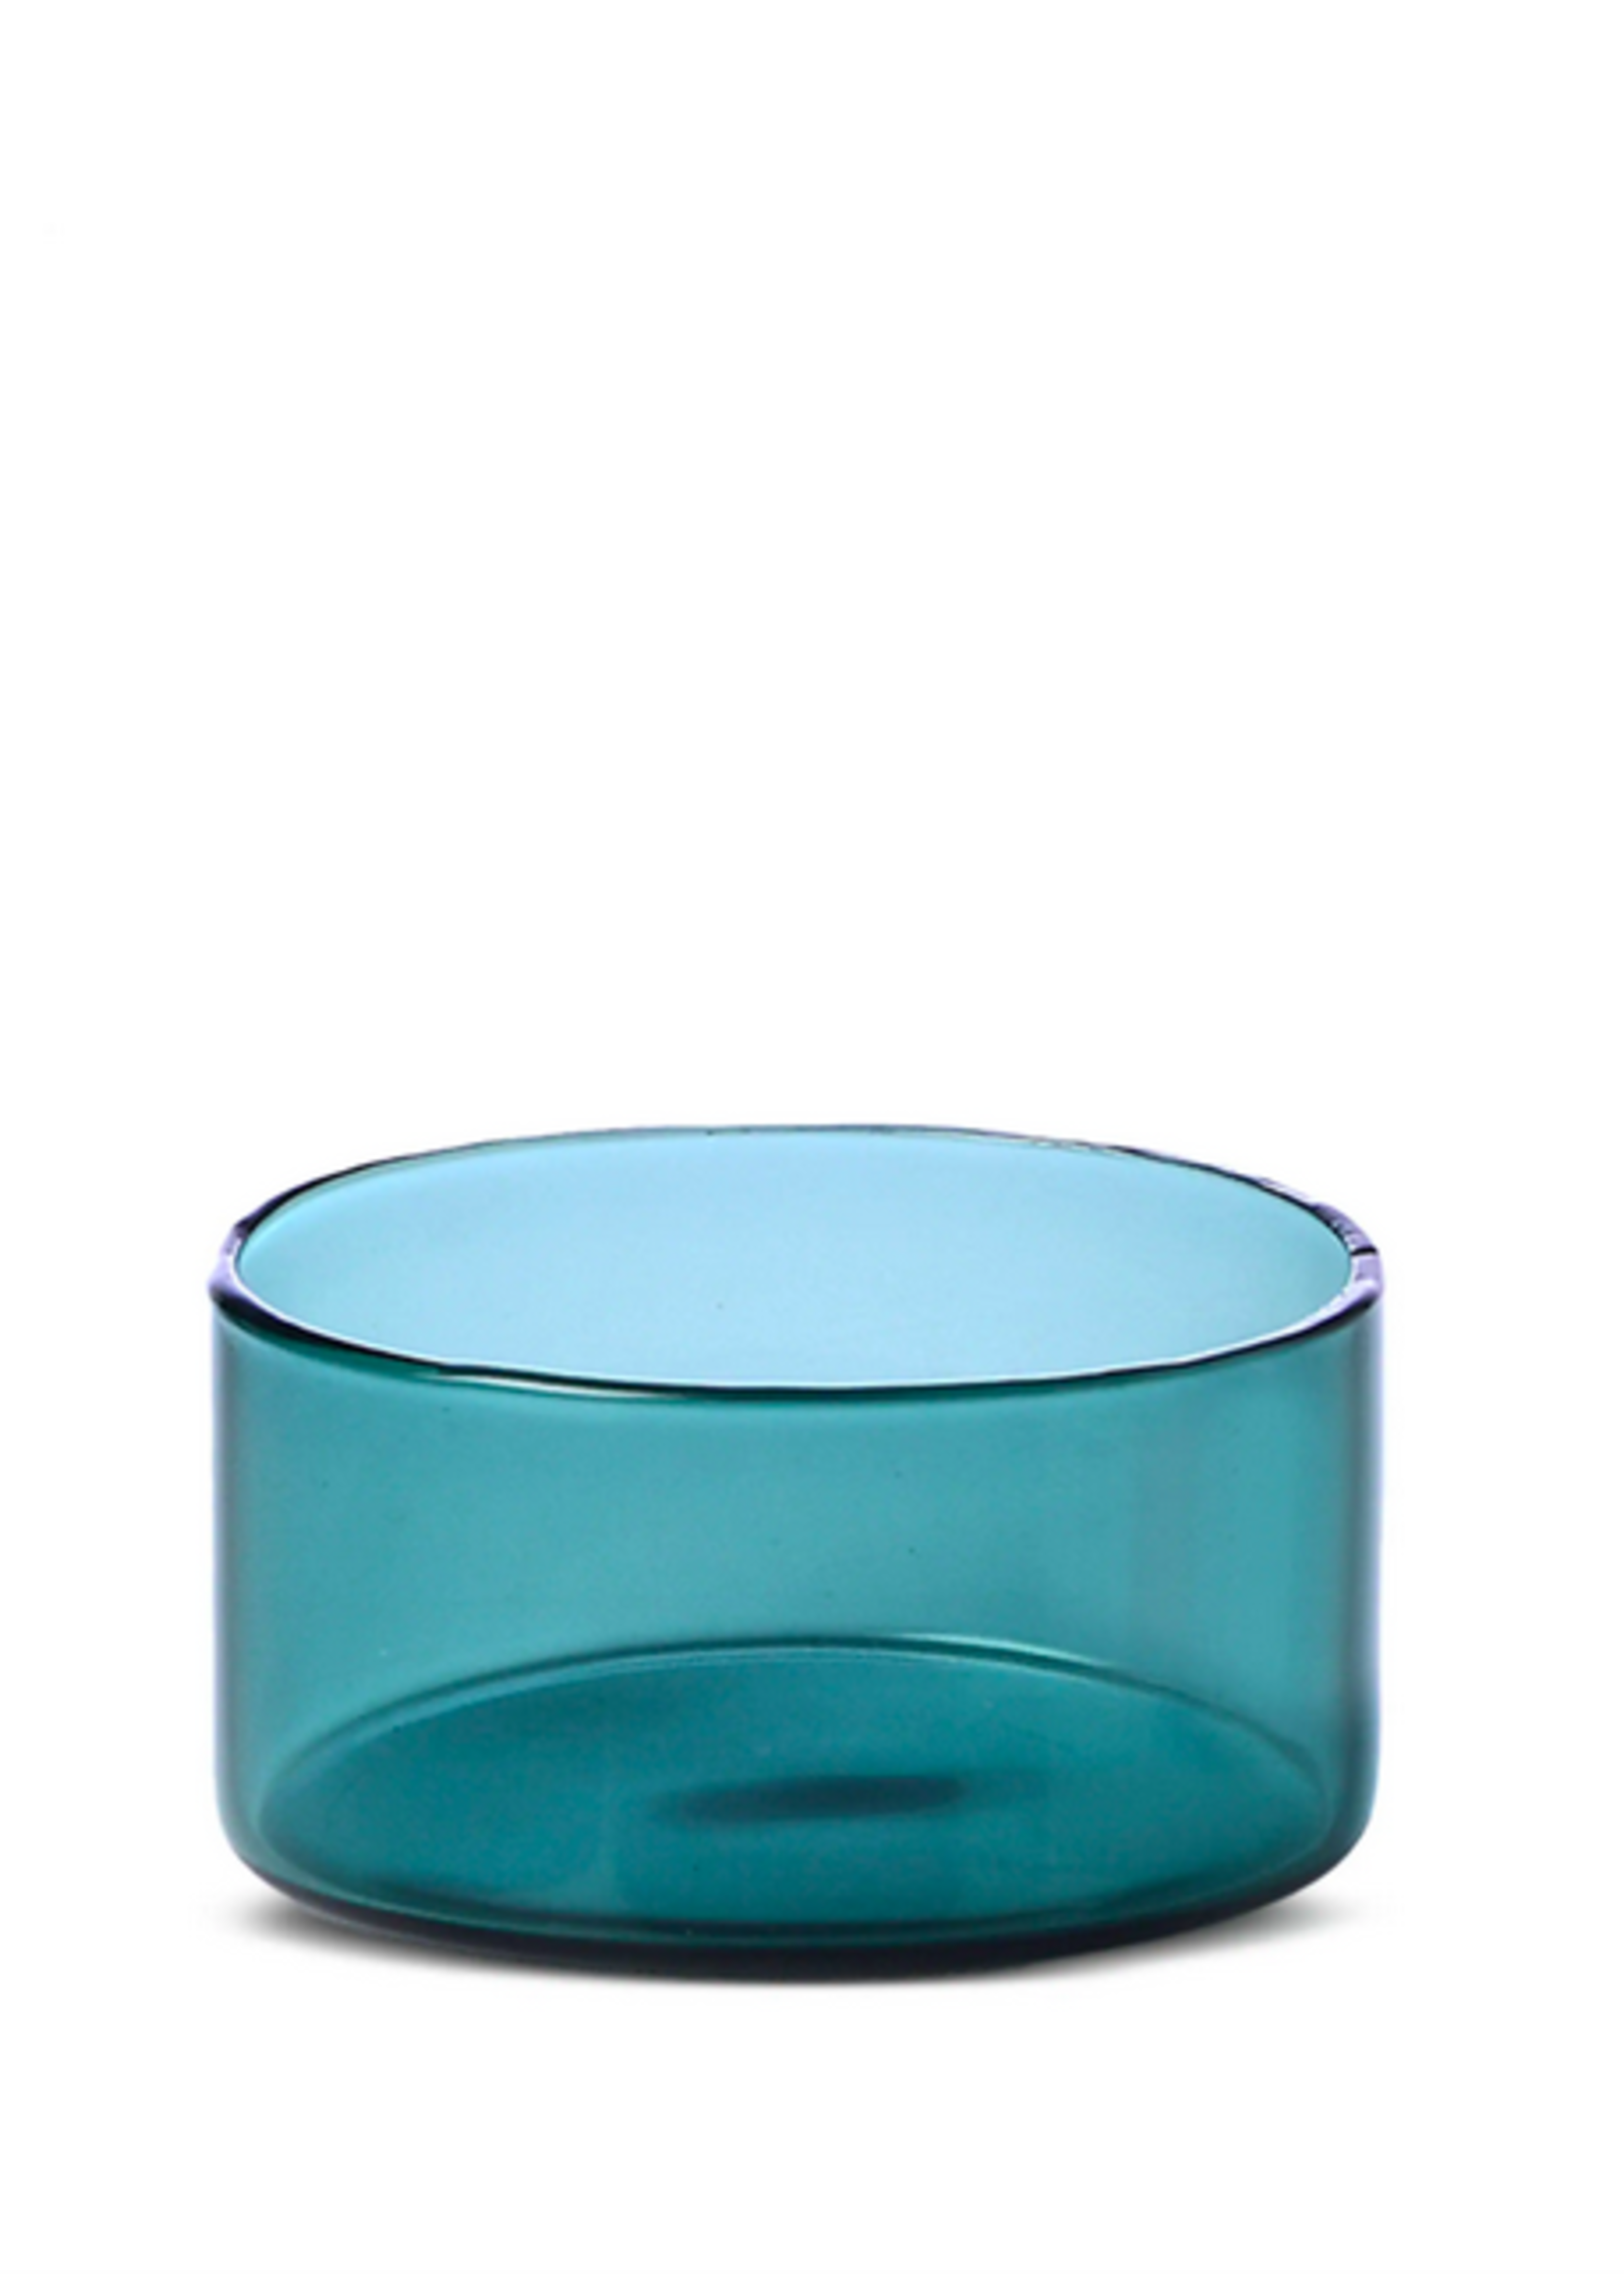 Ichendorf Kenzan glass tray set 6,5 /13 / 5 cm